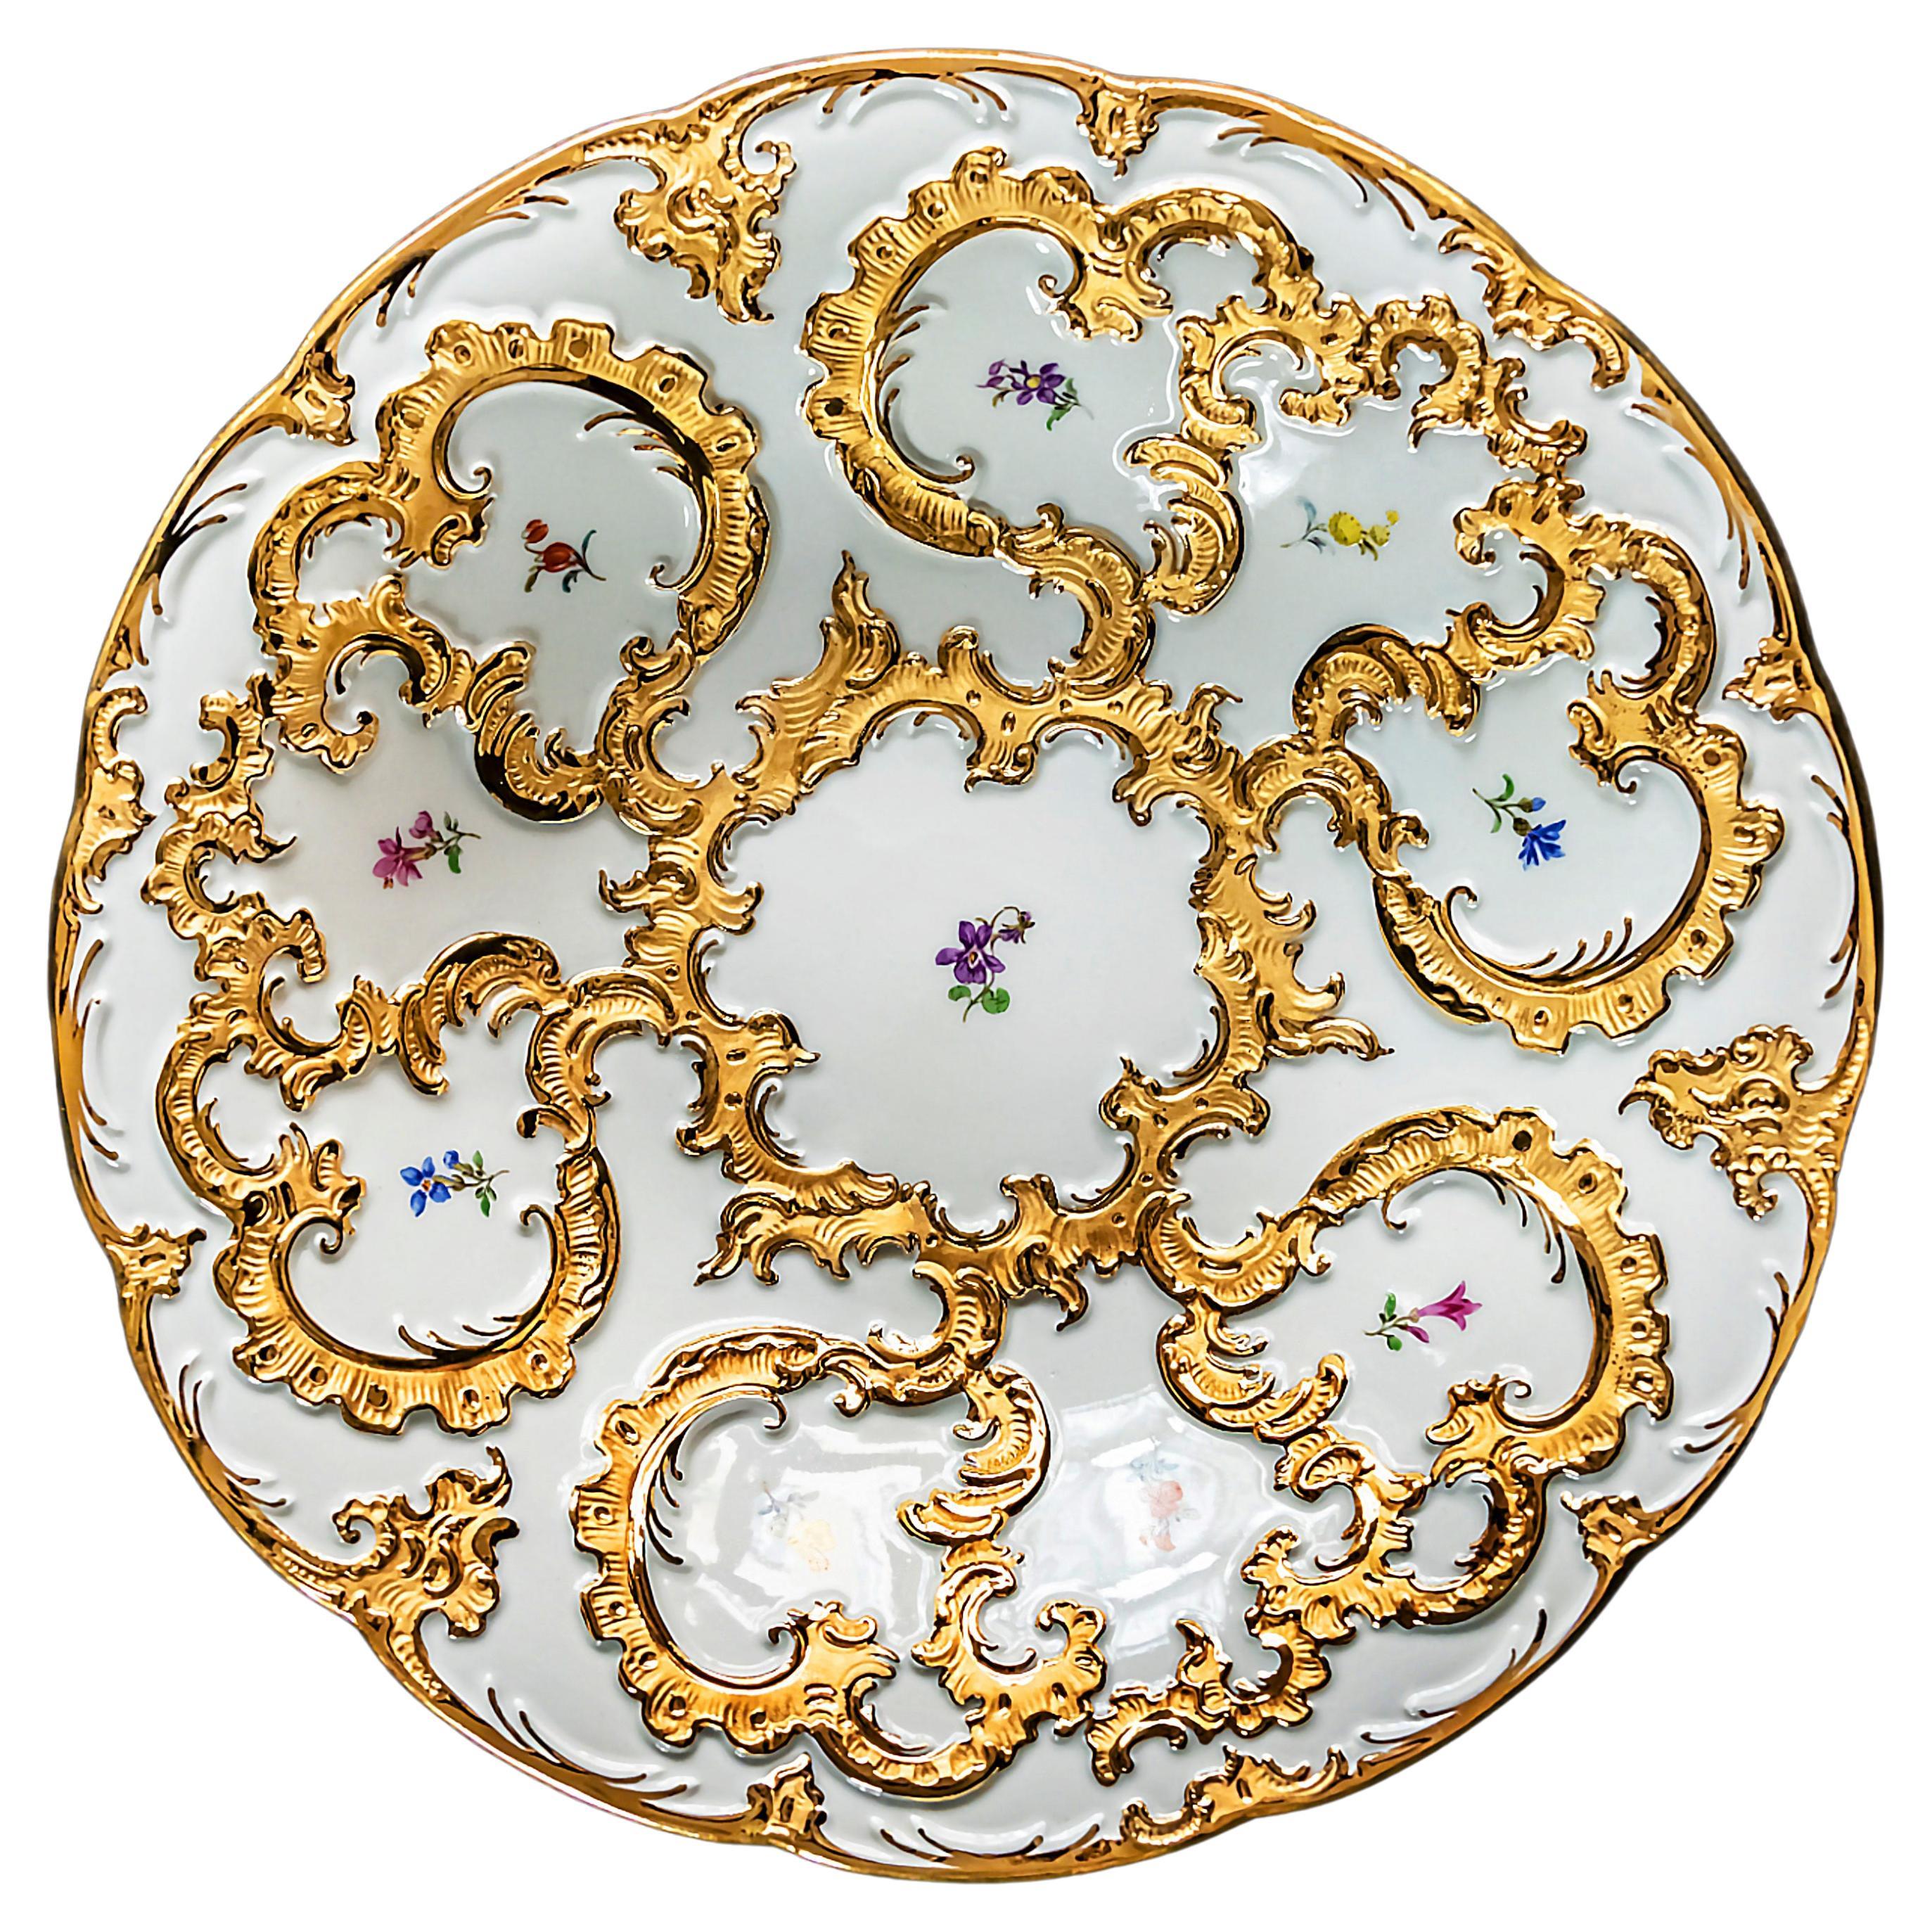 Assiette en porcelaine de Meissen décorée d'or et de fleurs